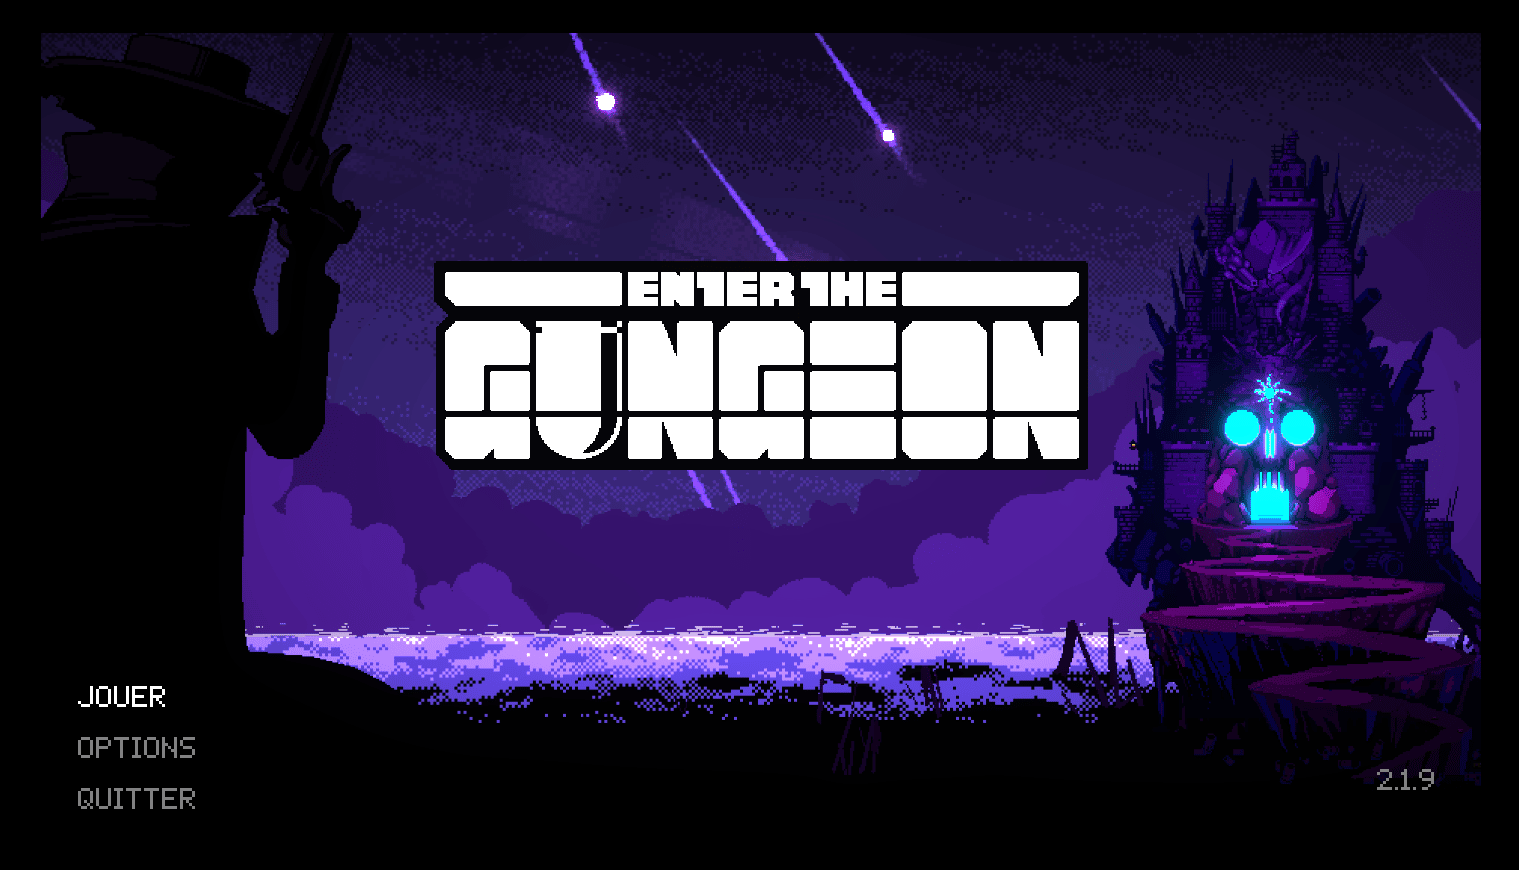 L’Epic Games Store offre “Enter The Gungeon” et accélère son rythme